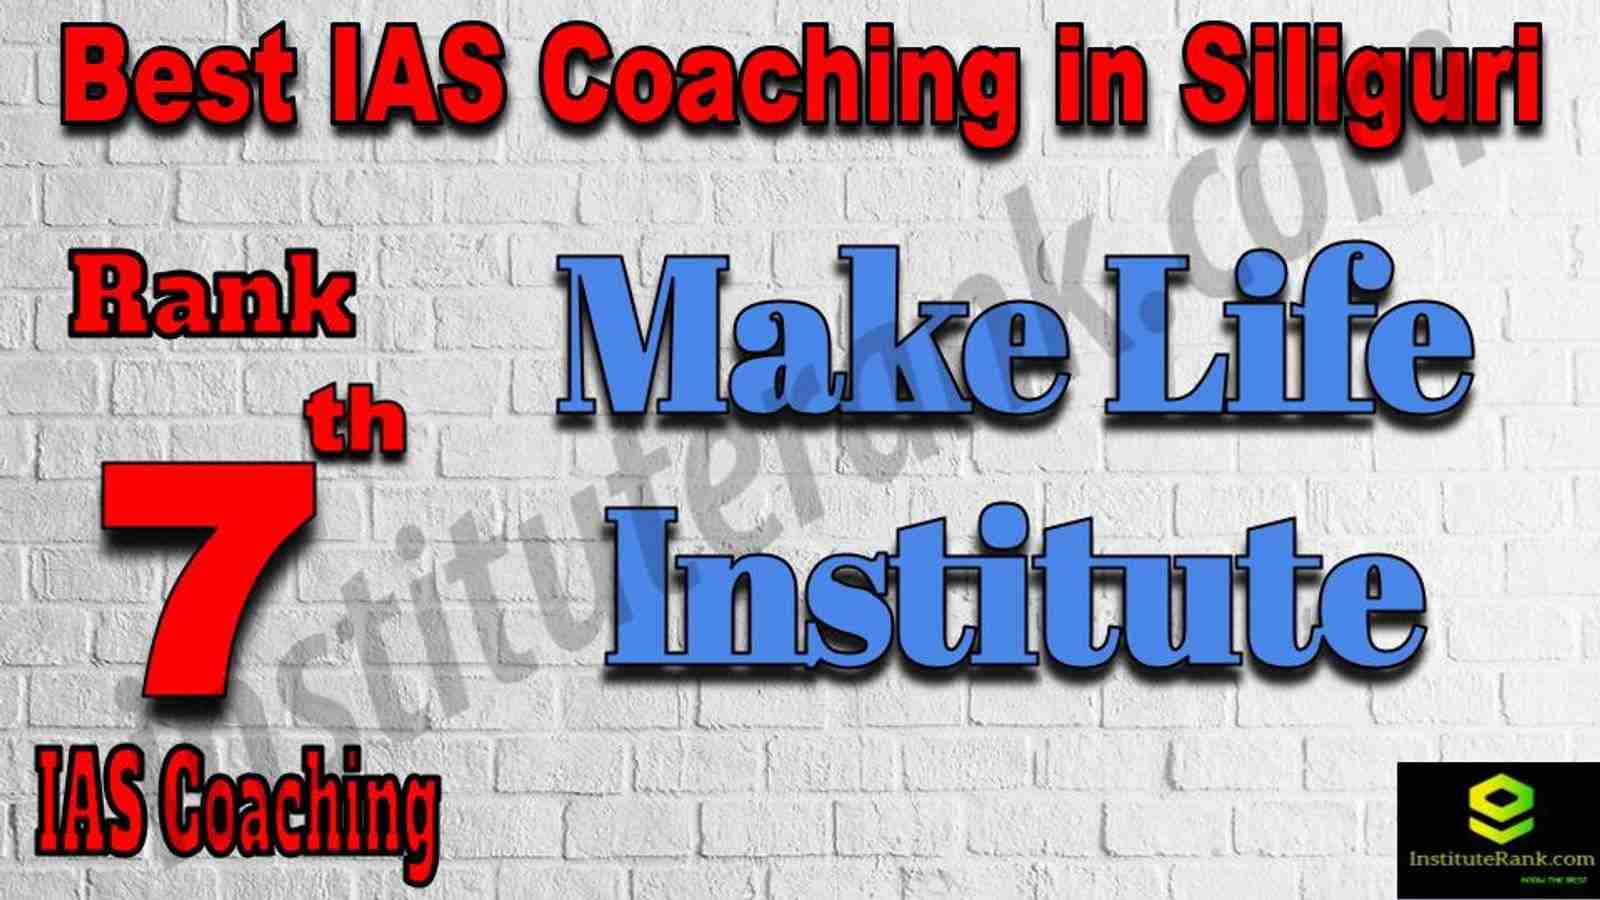 7th Best IAS Coaching in Siliguri